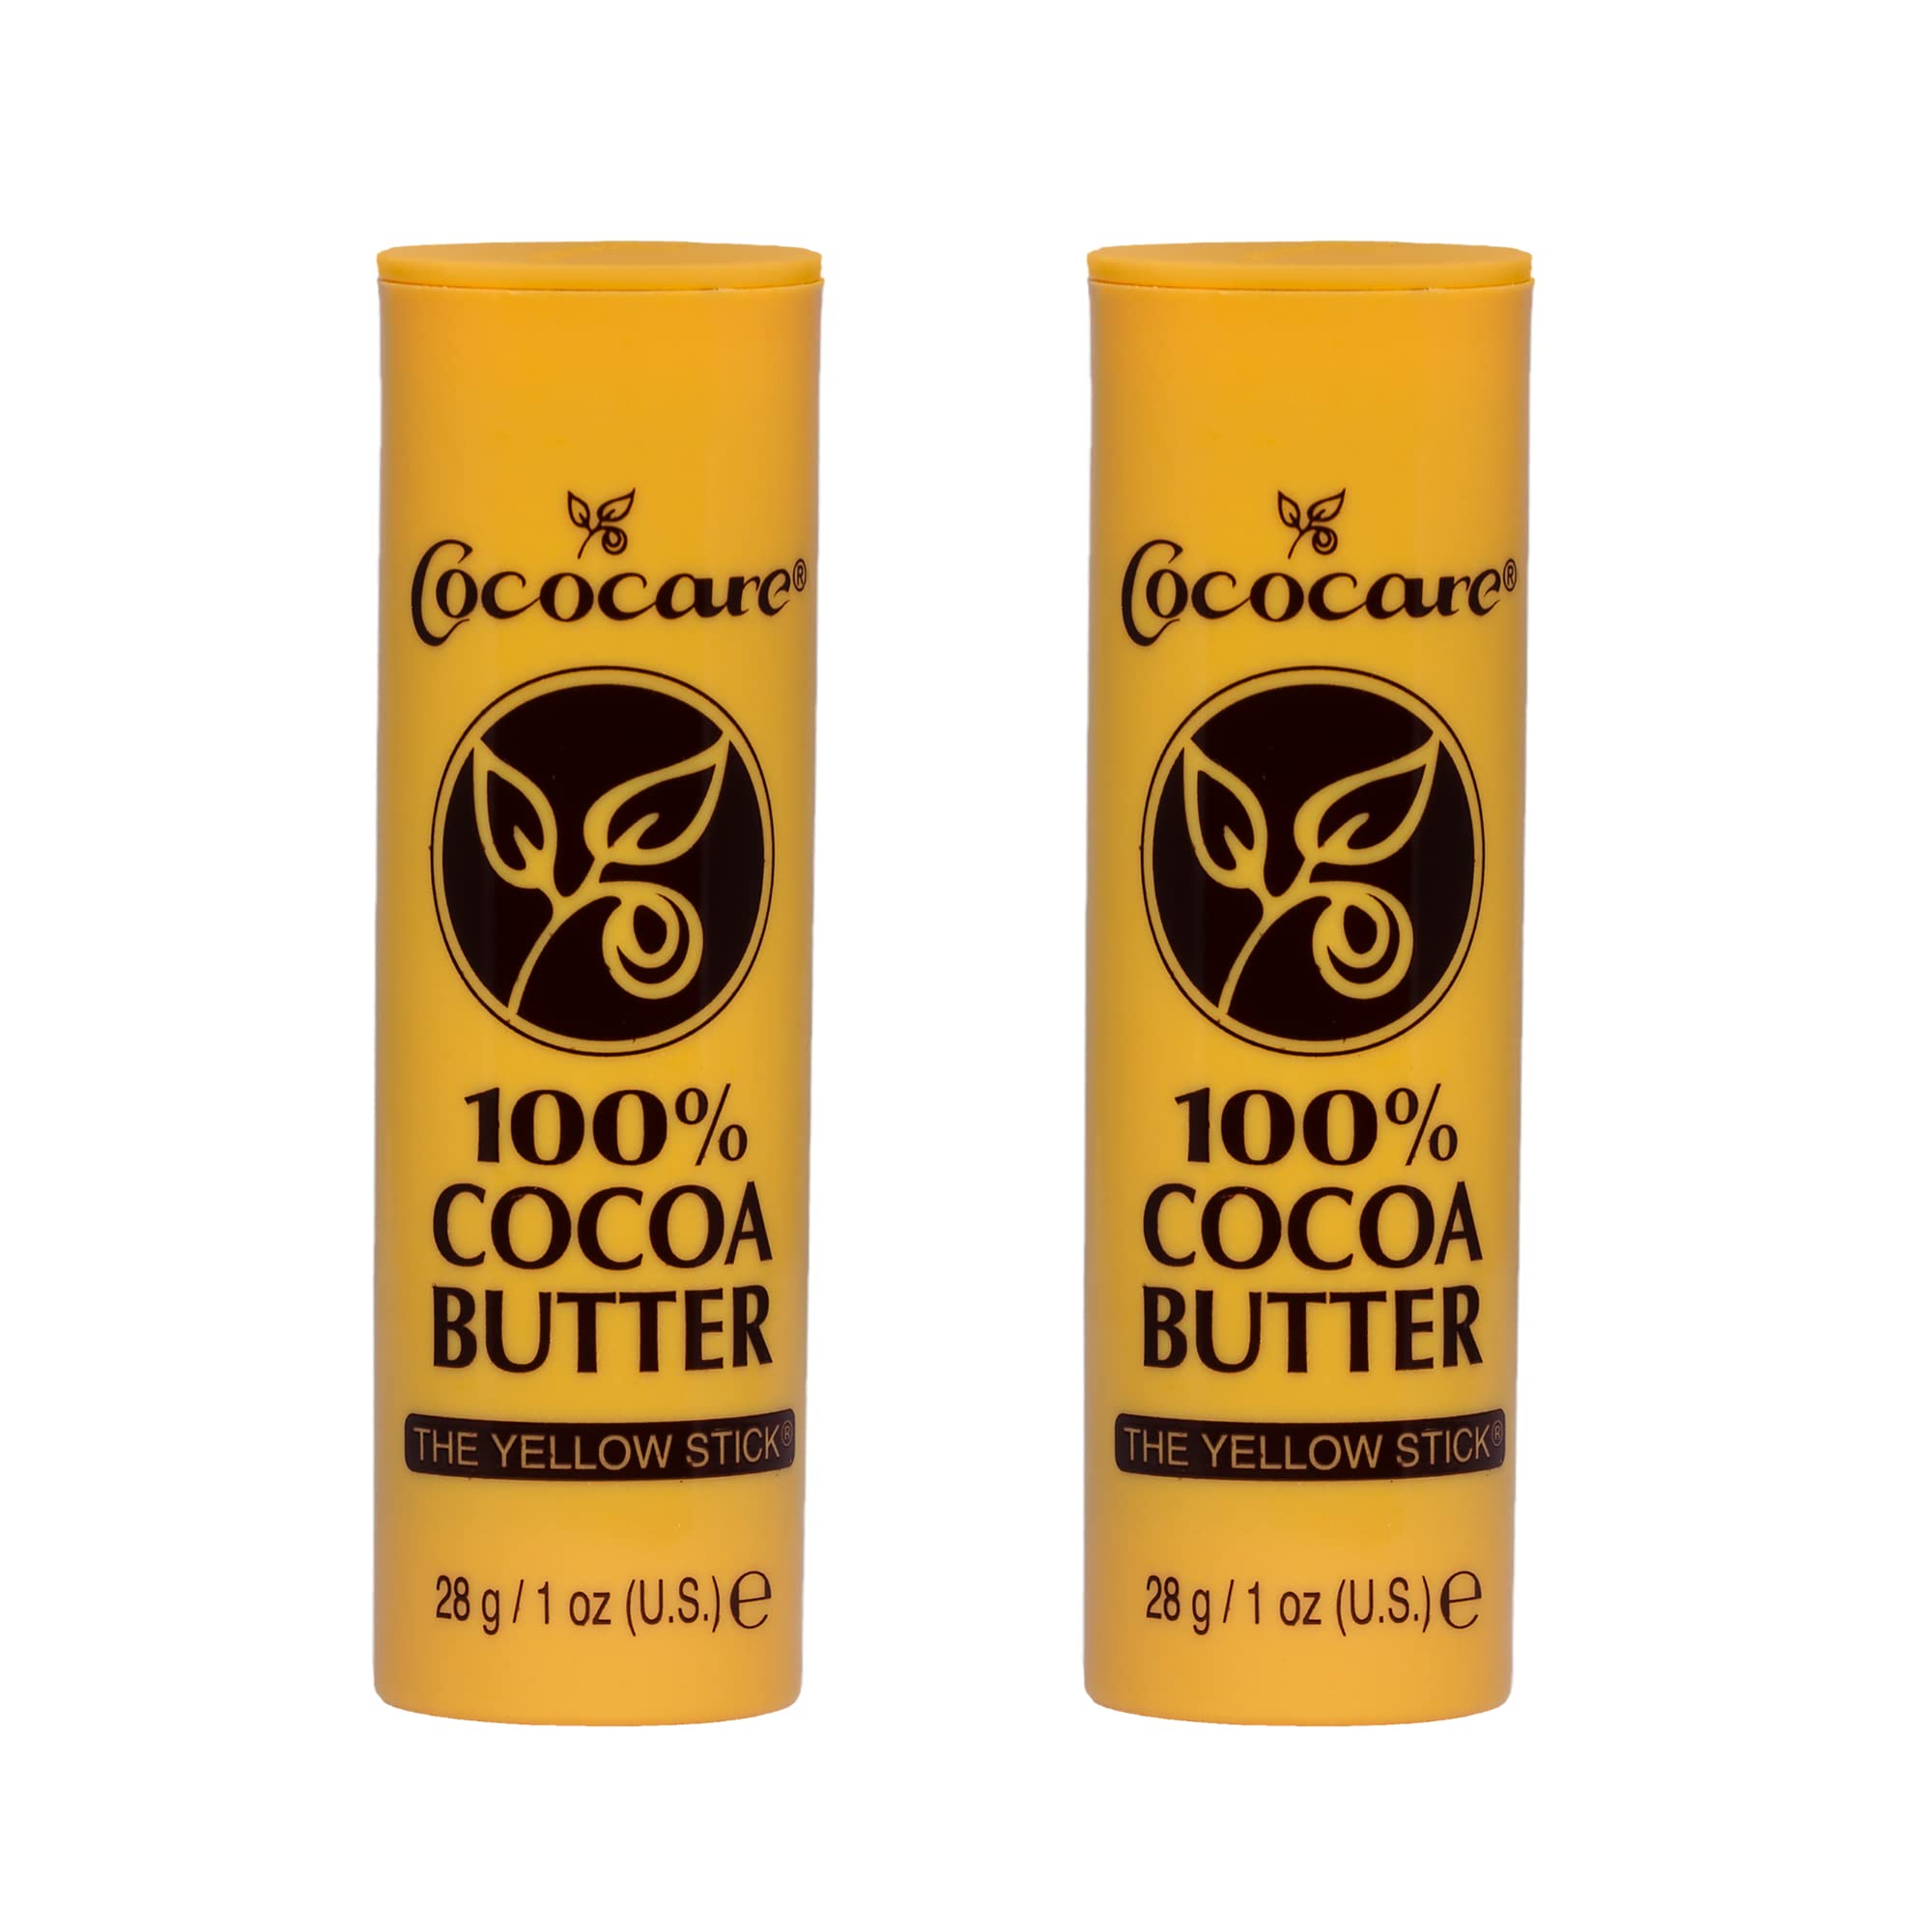 Cococare 100% Cocoa Butter Stick 1 oz. 2 Pack $2.88